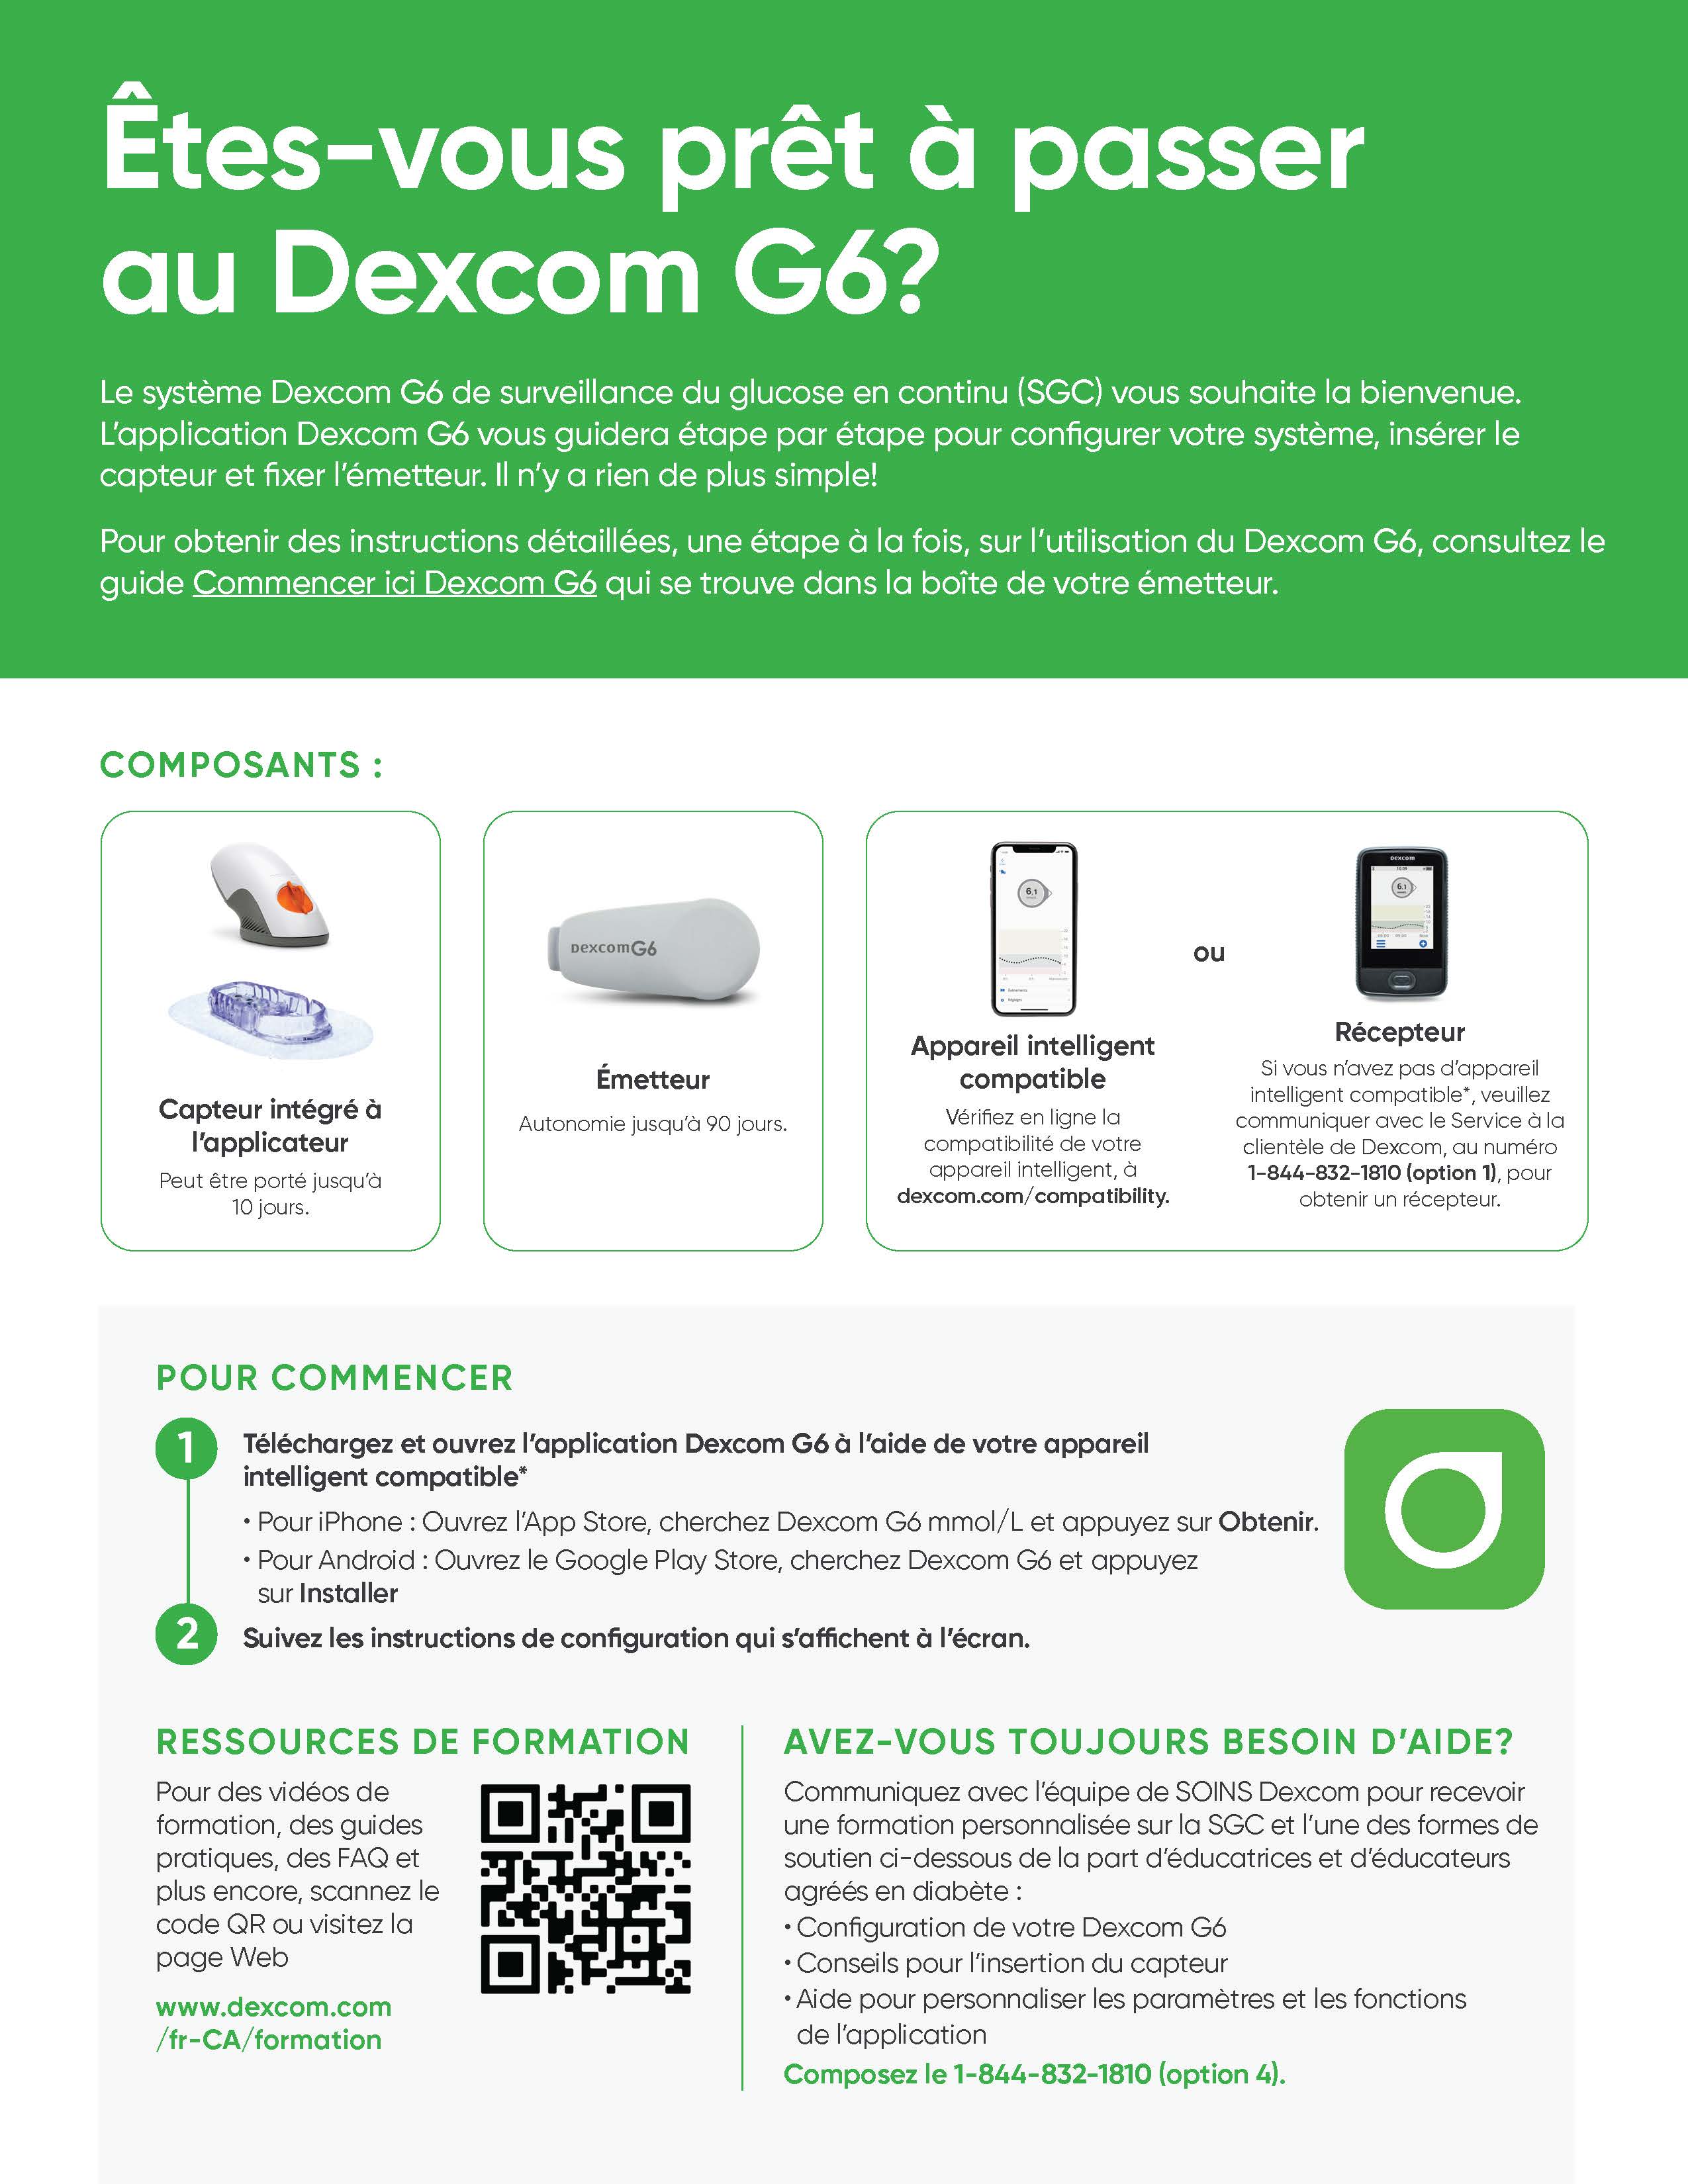 Donnez ceci aux patients qui utilisent le Dexcom G6 pour la première fois.